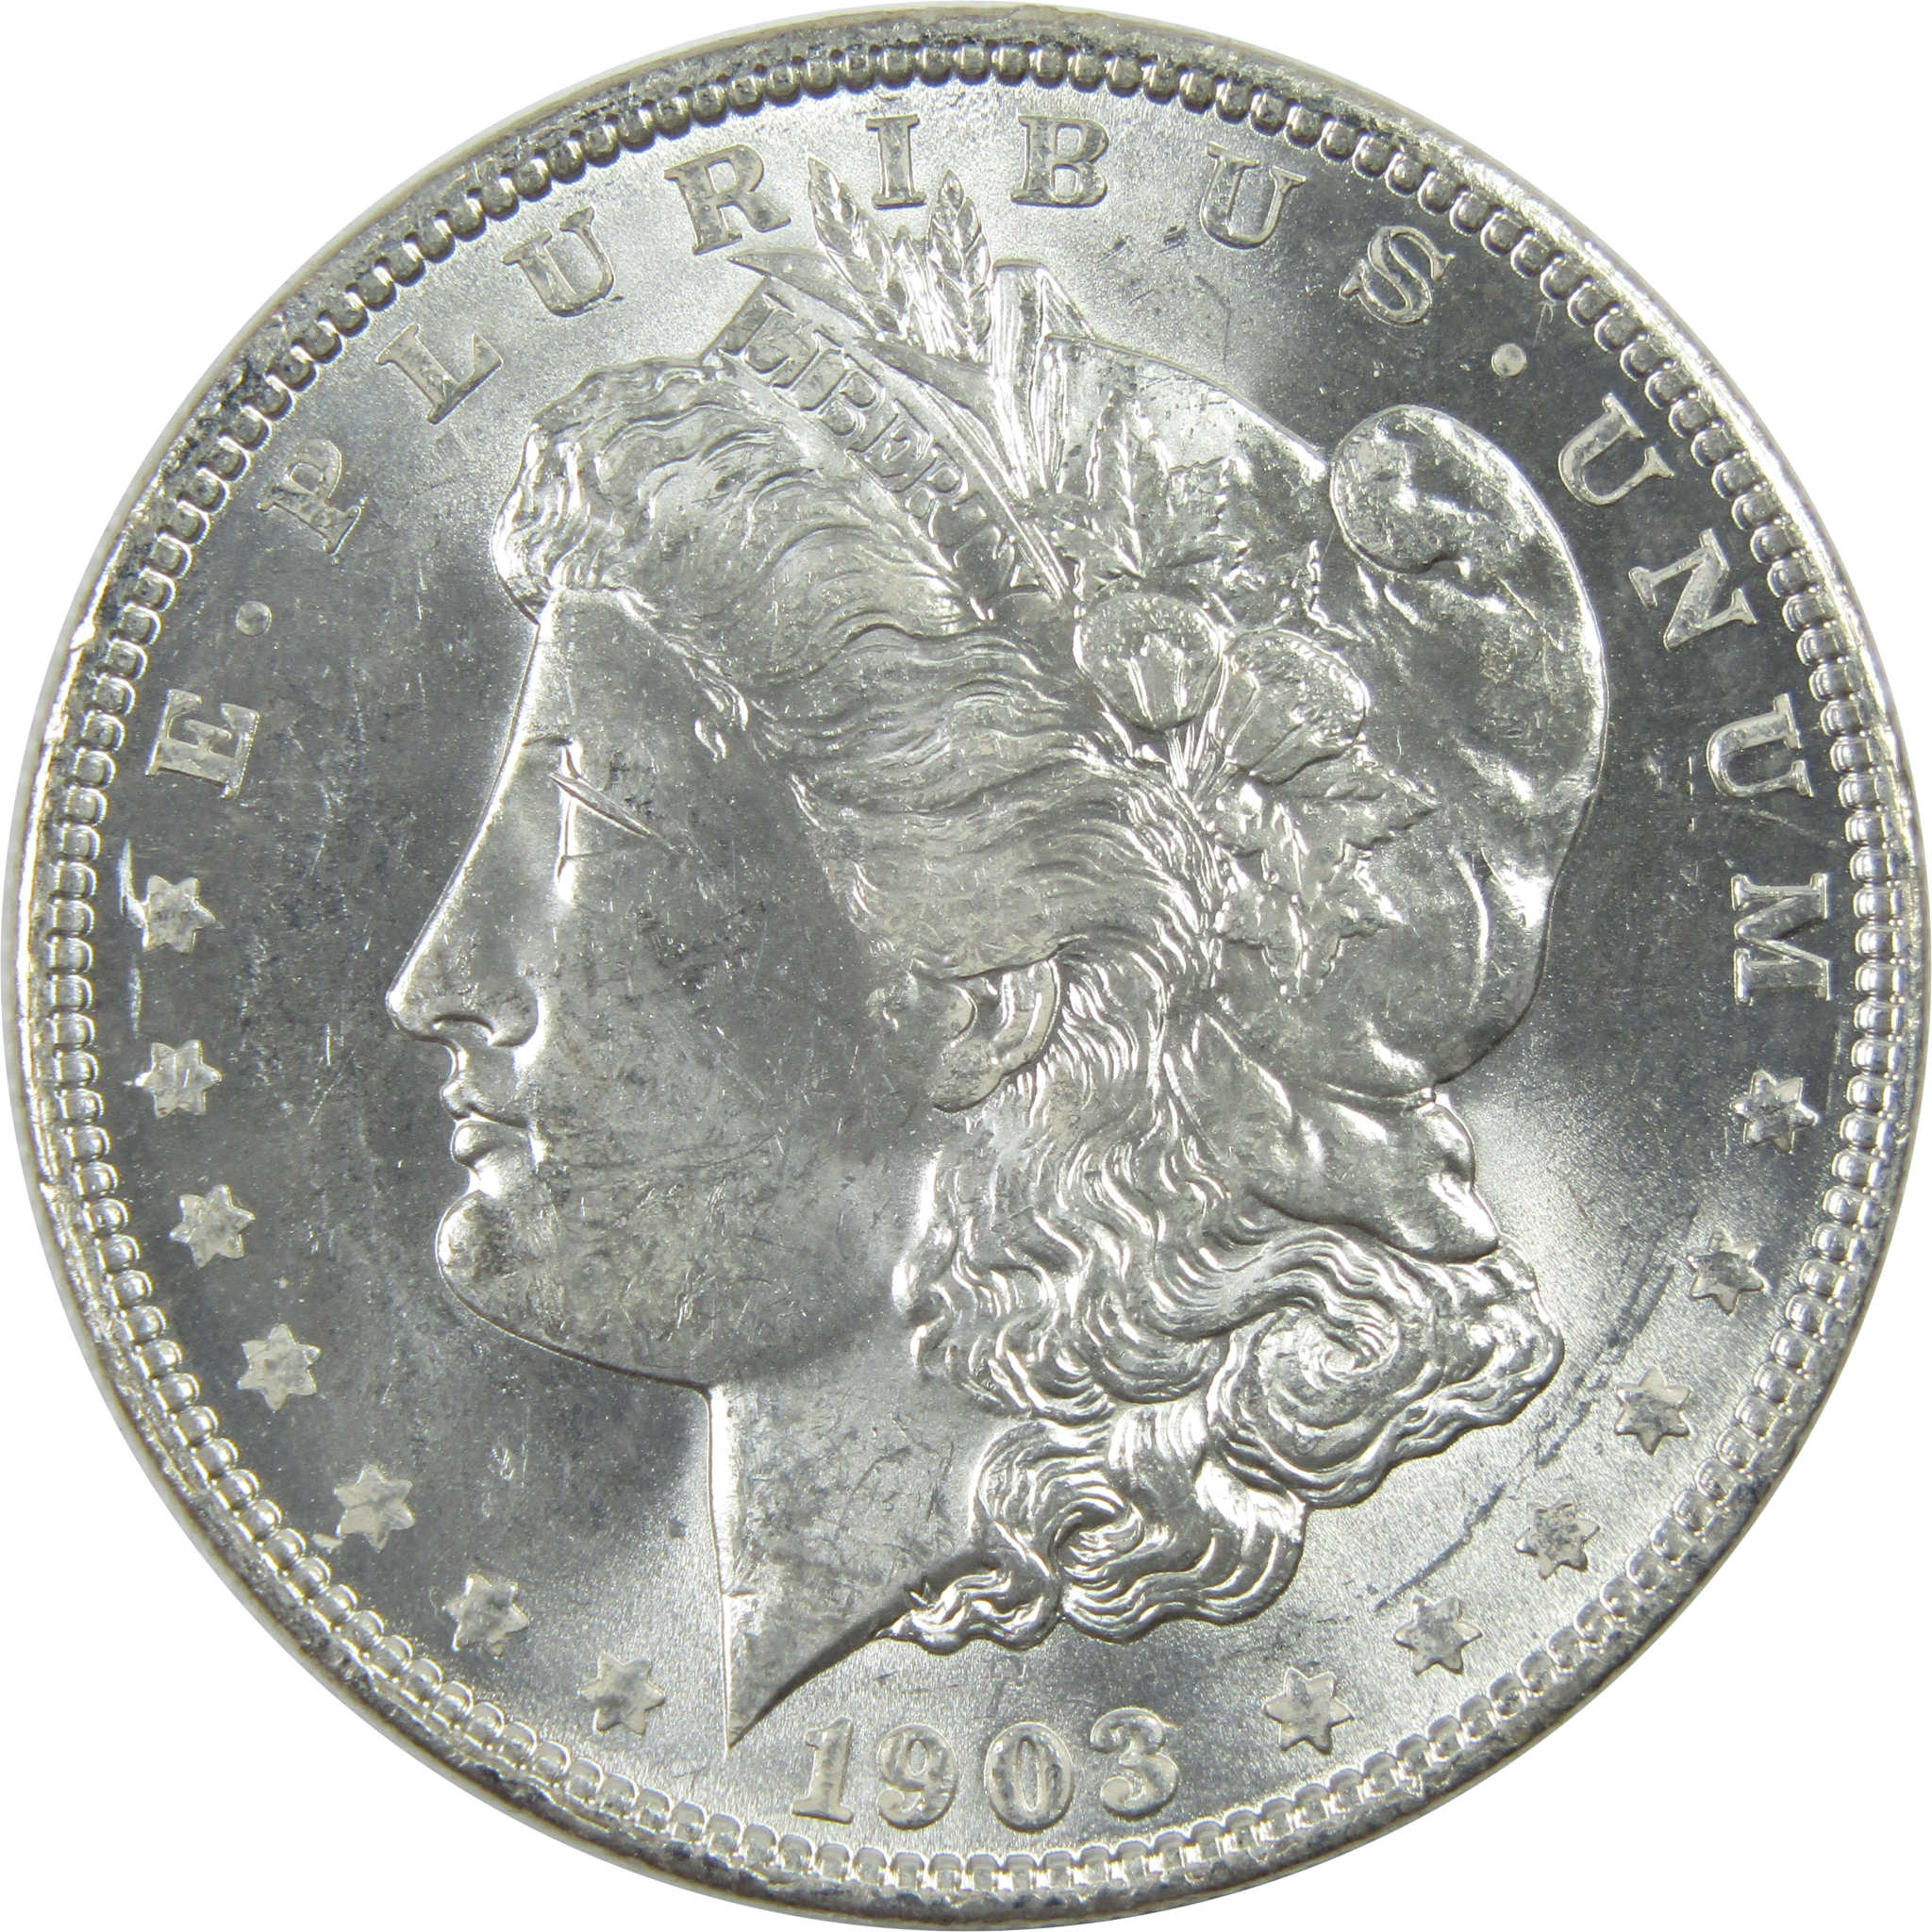 1903 O Morgan Dollar Uncirculated Silver $1 Coin SKU:I11738 - Morgan coin - Morgan silver dollar - Morgan silver dollar for sale - Profile Coins &amp; Collectibles